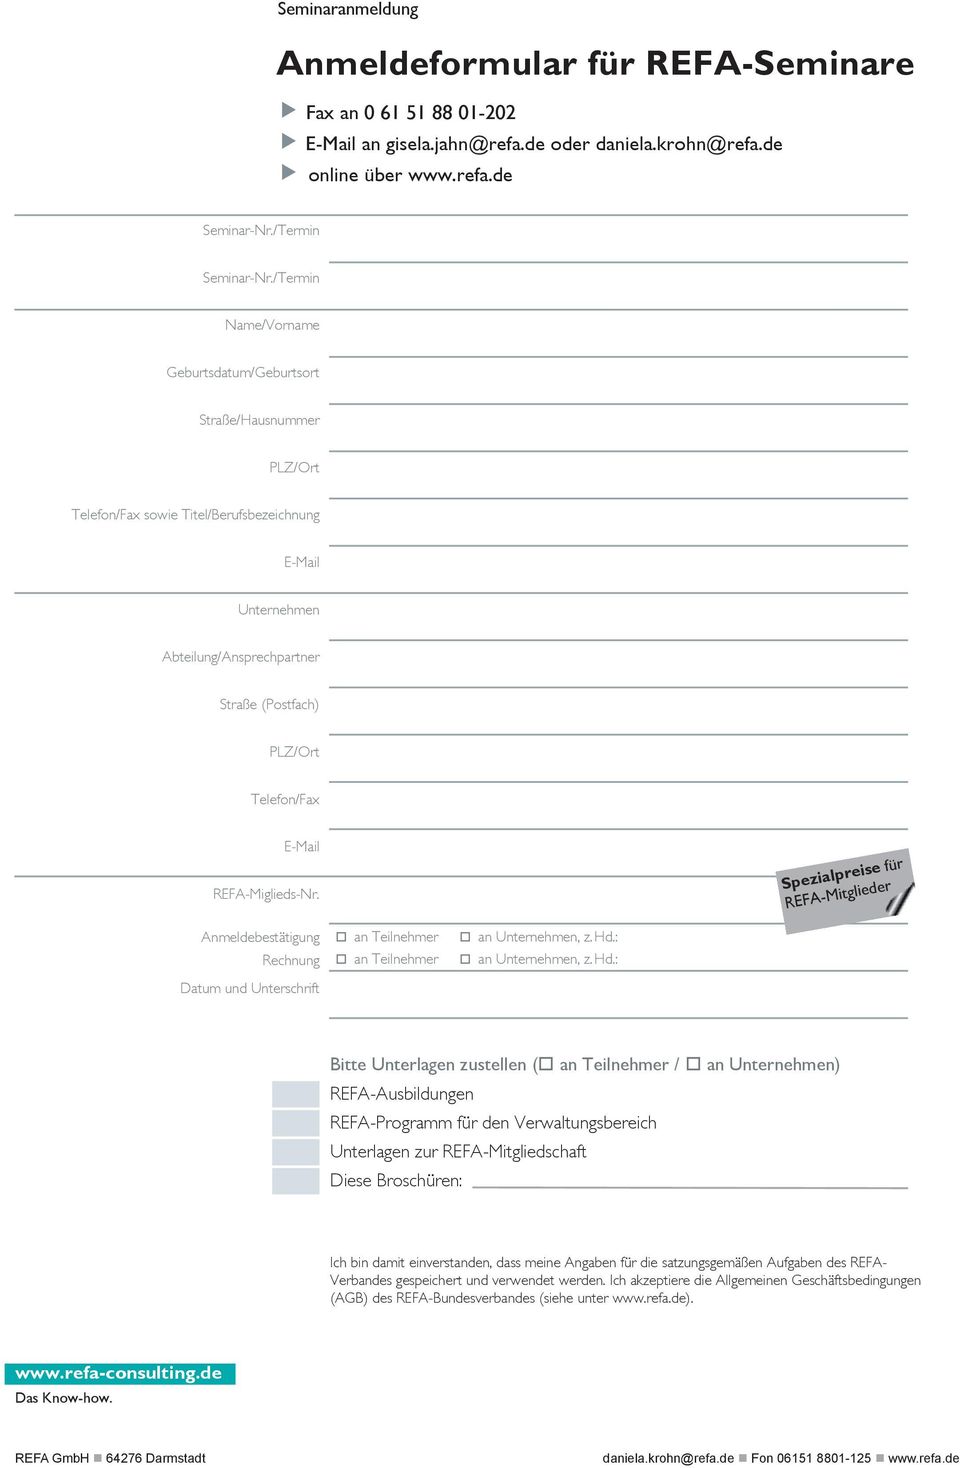 E-Mail REFA-Miglieds-Nr. Spezialpreise für REFA-Mitglieder Anmeldebestätigung Rechnung Datum und Unterschrift an Teilnehmer an Teilnehmer an Unternehmen, z. Hd.